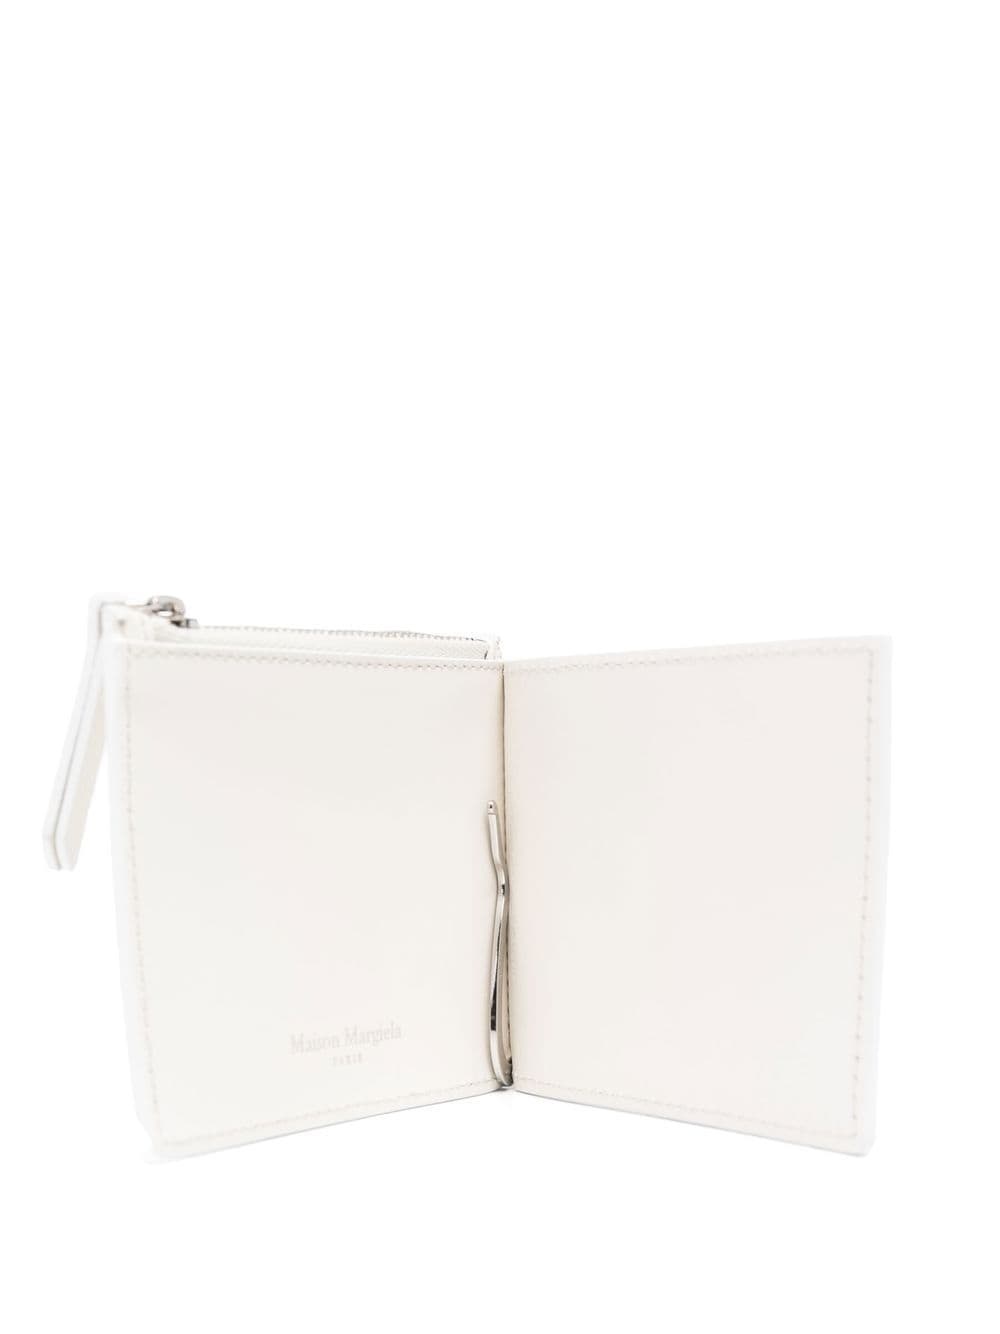 bi-fold leather wallet - 3